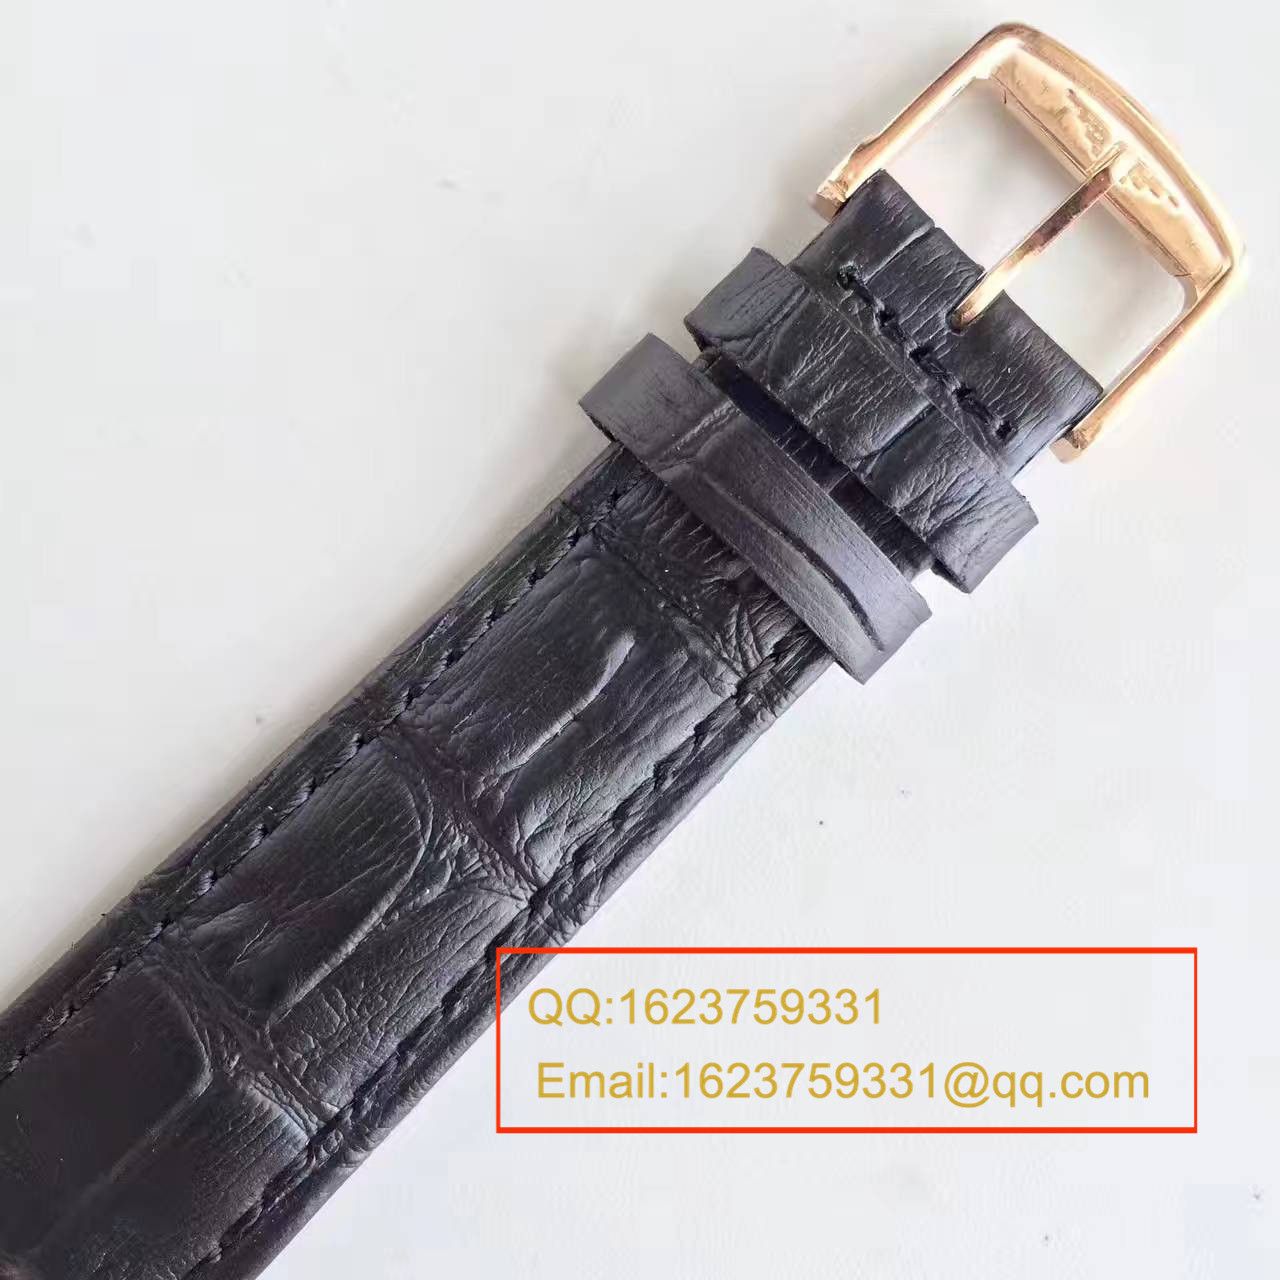 【台湾厂一比一超A精仿手表】浪琴制表传统博雅系列L4.787.8.11.0腕表 / L092